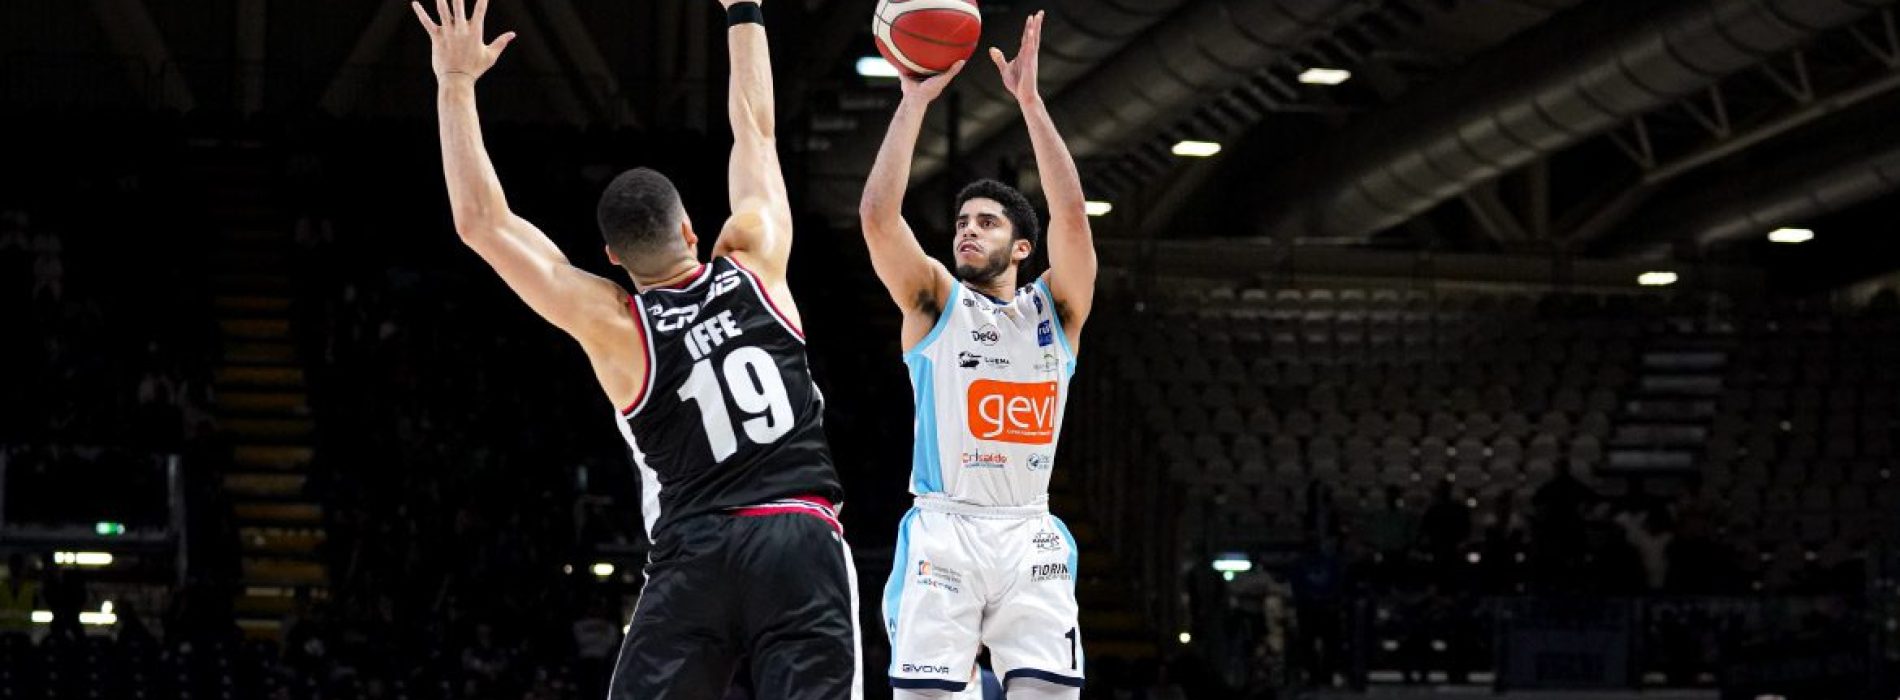 Gevi Napoli Basket, orgoglio e determinazione: battuta la capolista Virtus Bologna